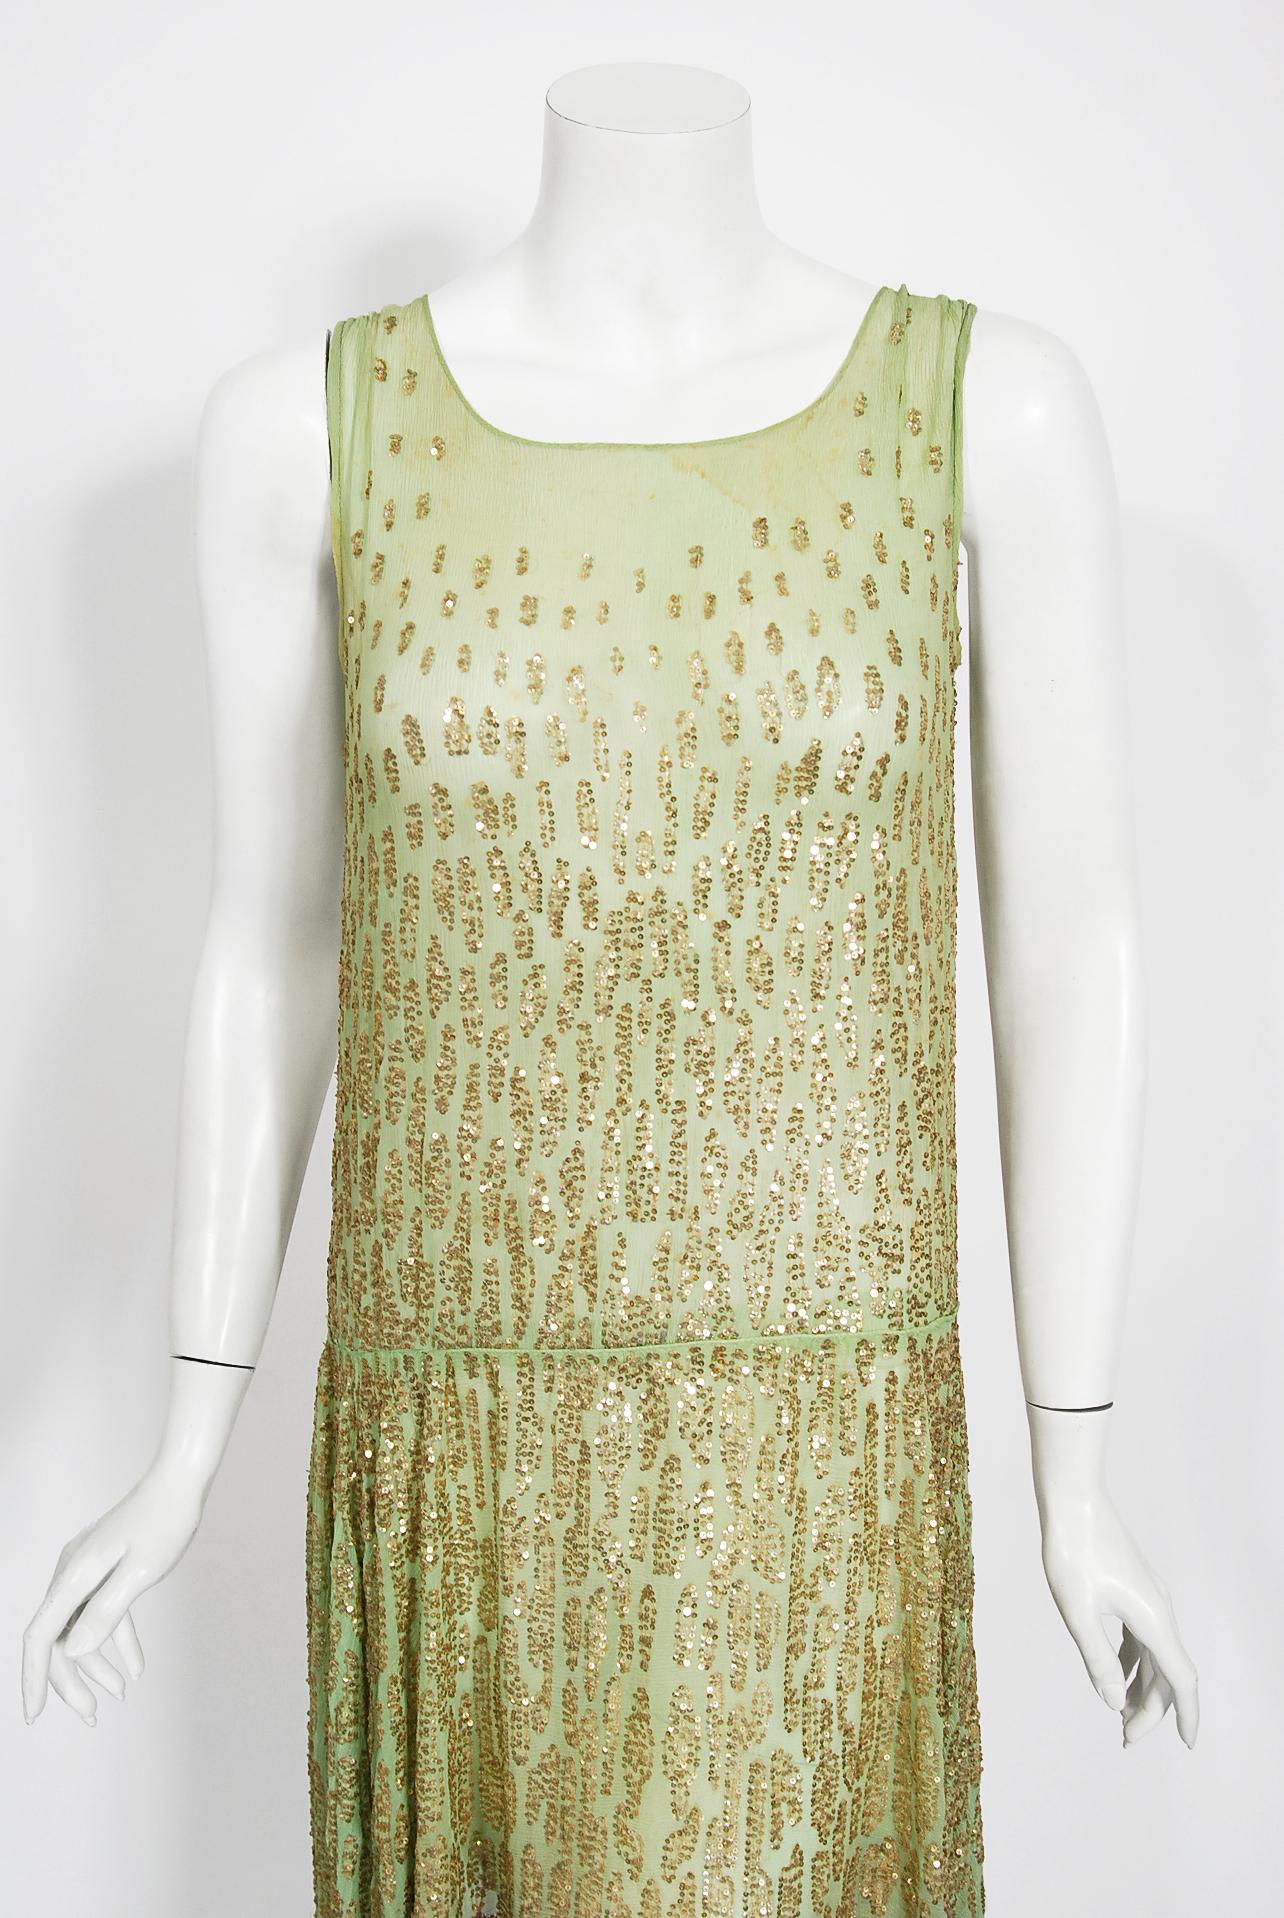 Une robe de danse à couper le souffle, datant du milieu des années 1920, de la couture française, avec des perles vert menthe scintillantes. La couleur magique vert menthe mélangée aux micro-paillettes uniques en or décoré touche une corde sensible